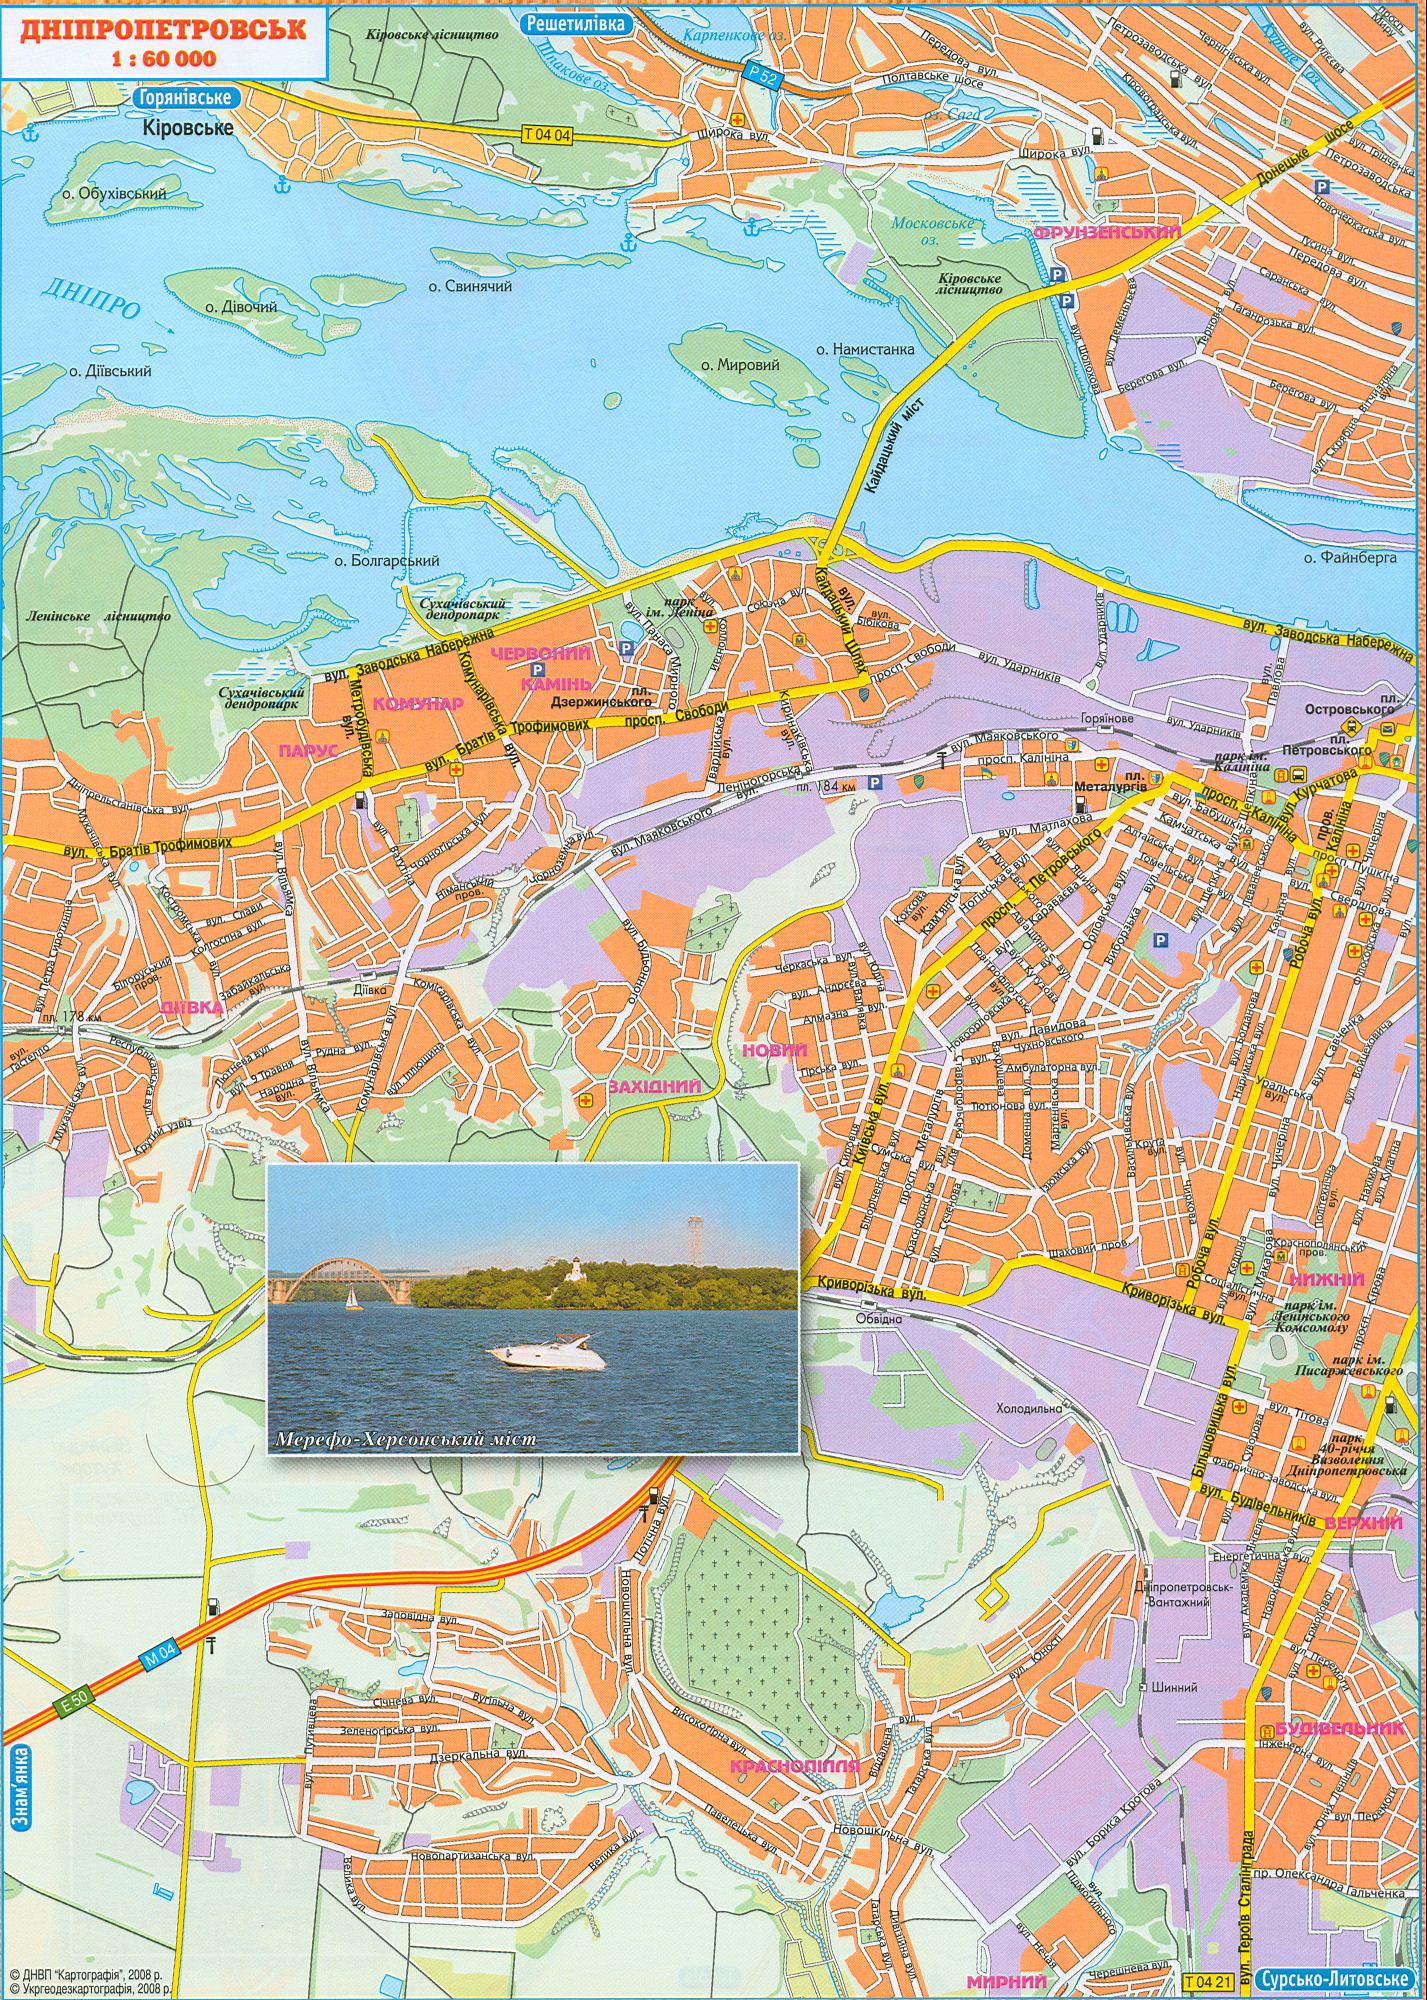 Карта Днепропетровска. Новая карта 2008 года города Днепропетровск с названиями улиц. Скачать бесплатно